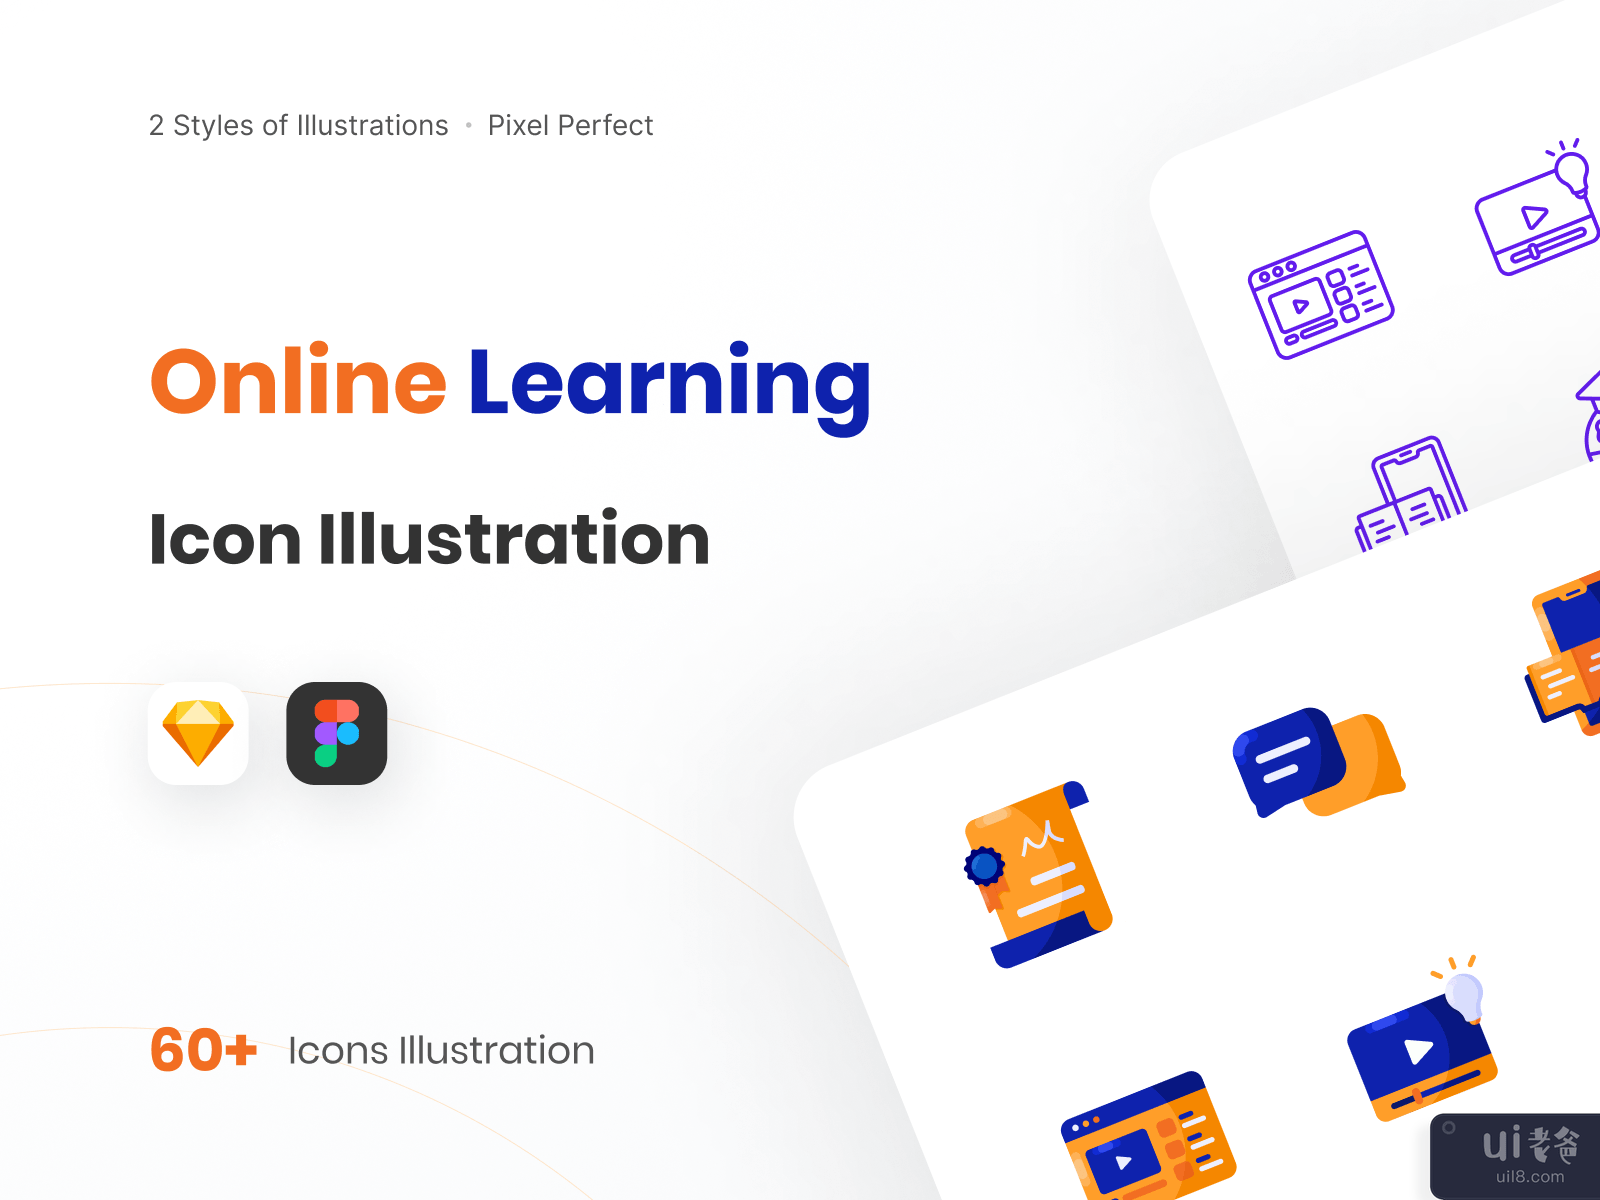 在线学习图标说明-颜色样式(Online Learning Icon Illustration - Color Styles)插图